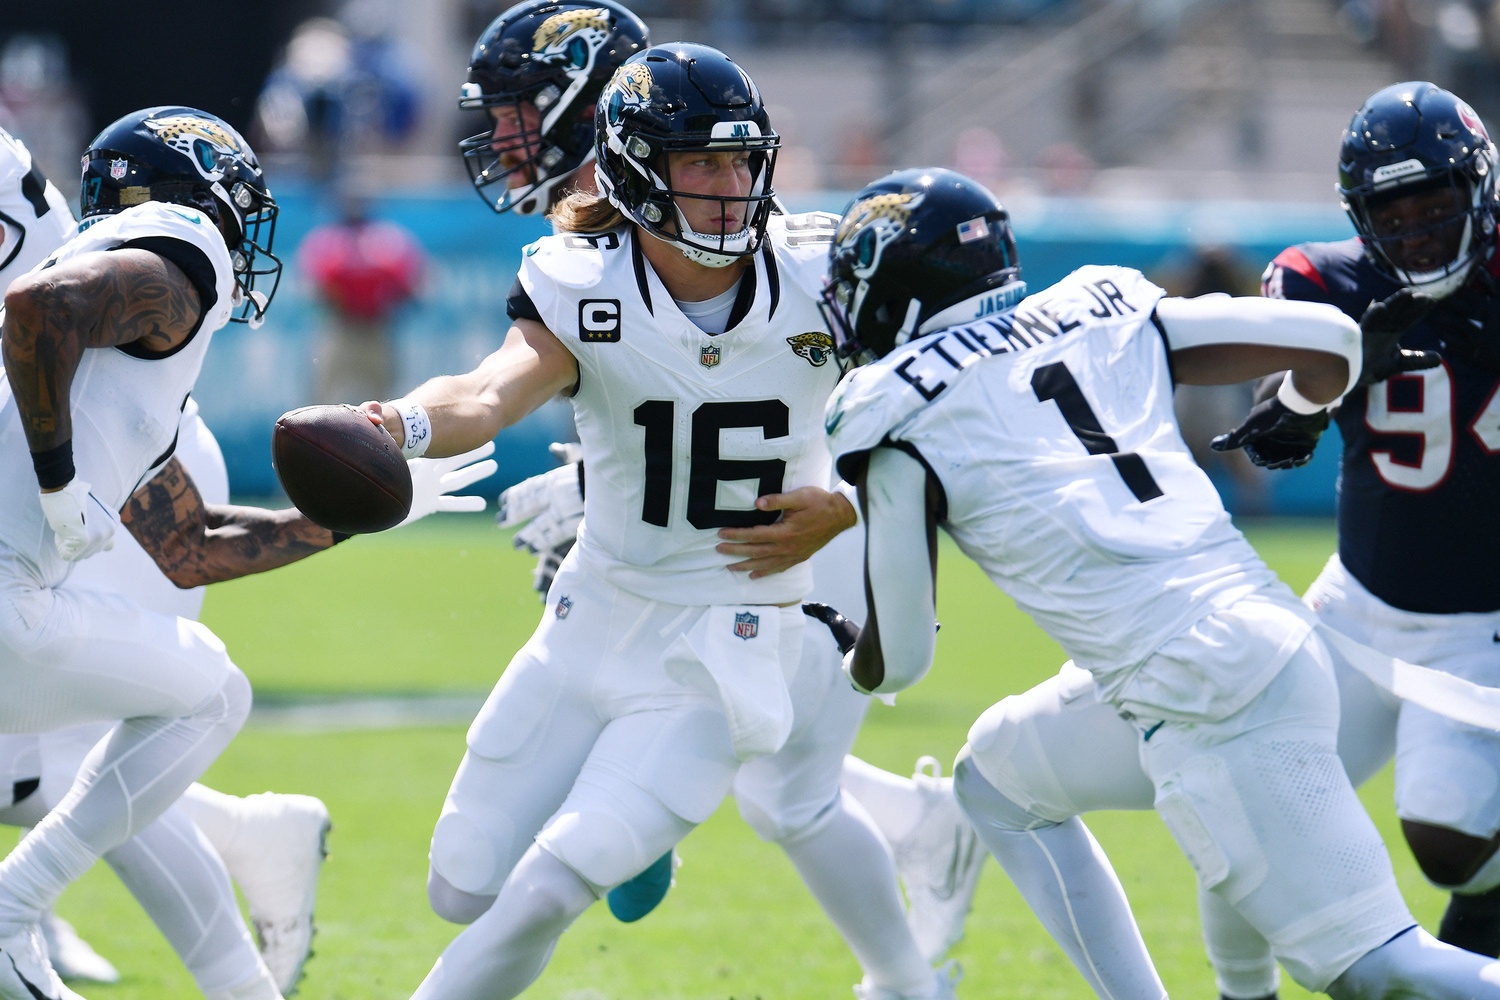 Jacksonville Jaguars to make NFL history in back-to-back London games, NFL